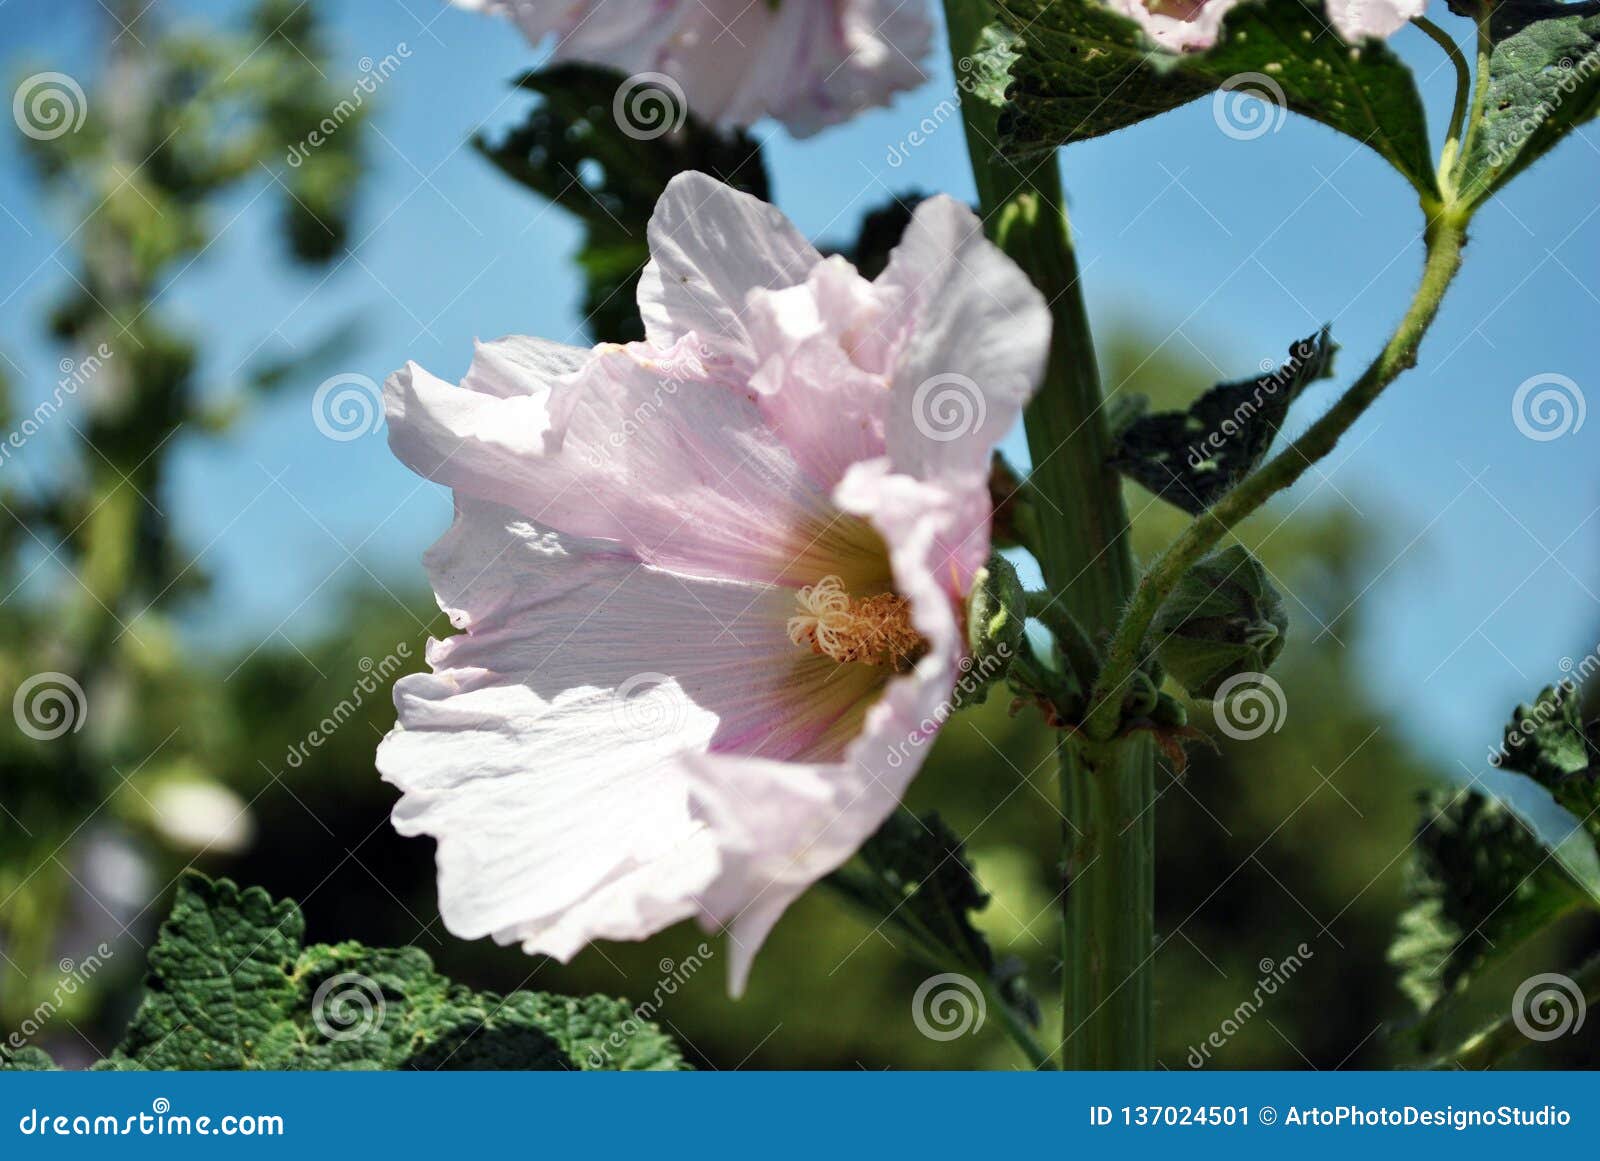 Las flores rosadas en colores pastel y las hojas suaves de la malva en tronco, se cierran encima del detalle, de árboles borrosos suaves y de fondo del cielo azul